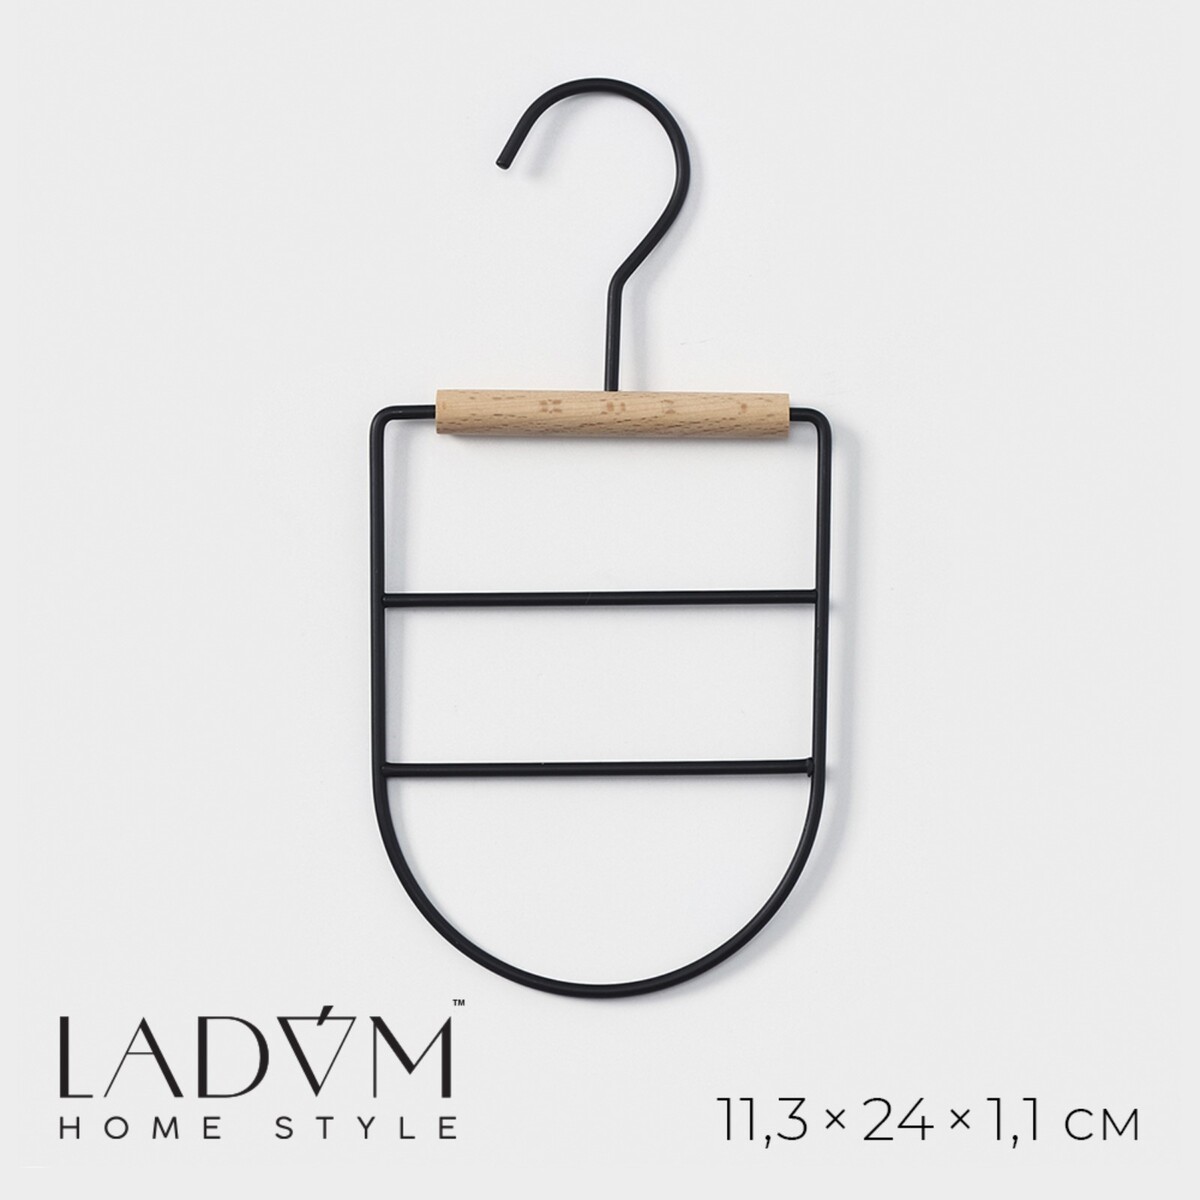 Вешалка органайзер для ремней и шарфов многоуровневая ladо́m laconique, 11,5×23,5×1,1 см, цвет черный вешалка органайзер для ремней и шарфов многоуровневая ladо́m laconique 11 3×24×1 1 см белый